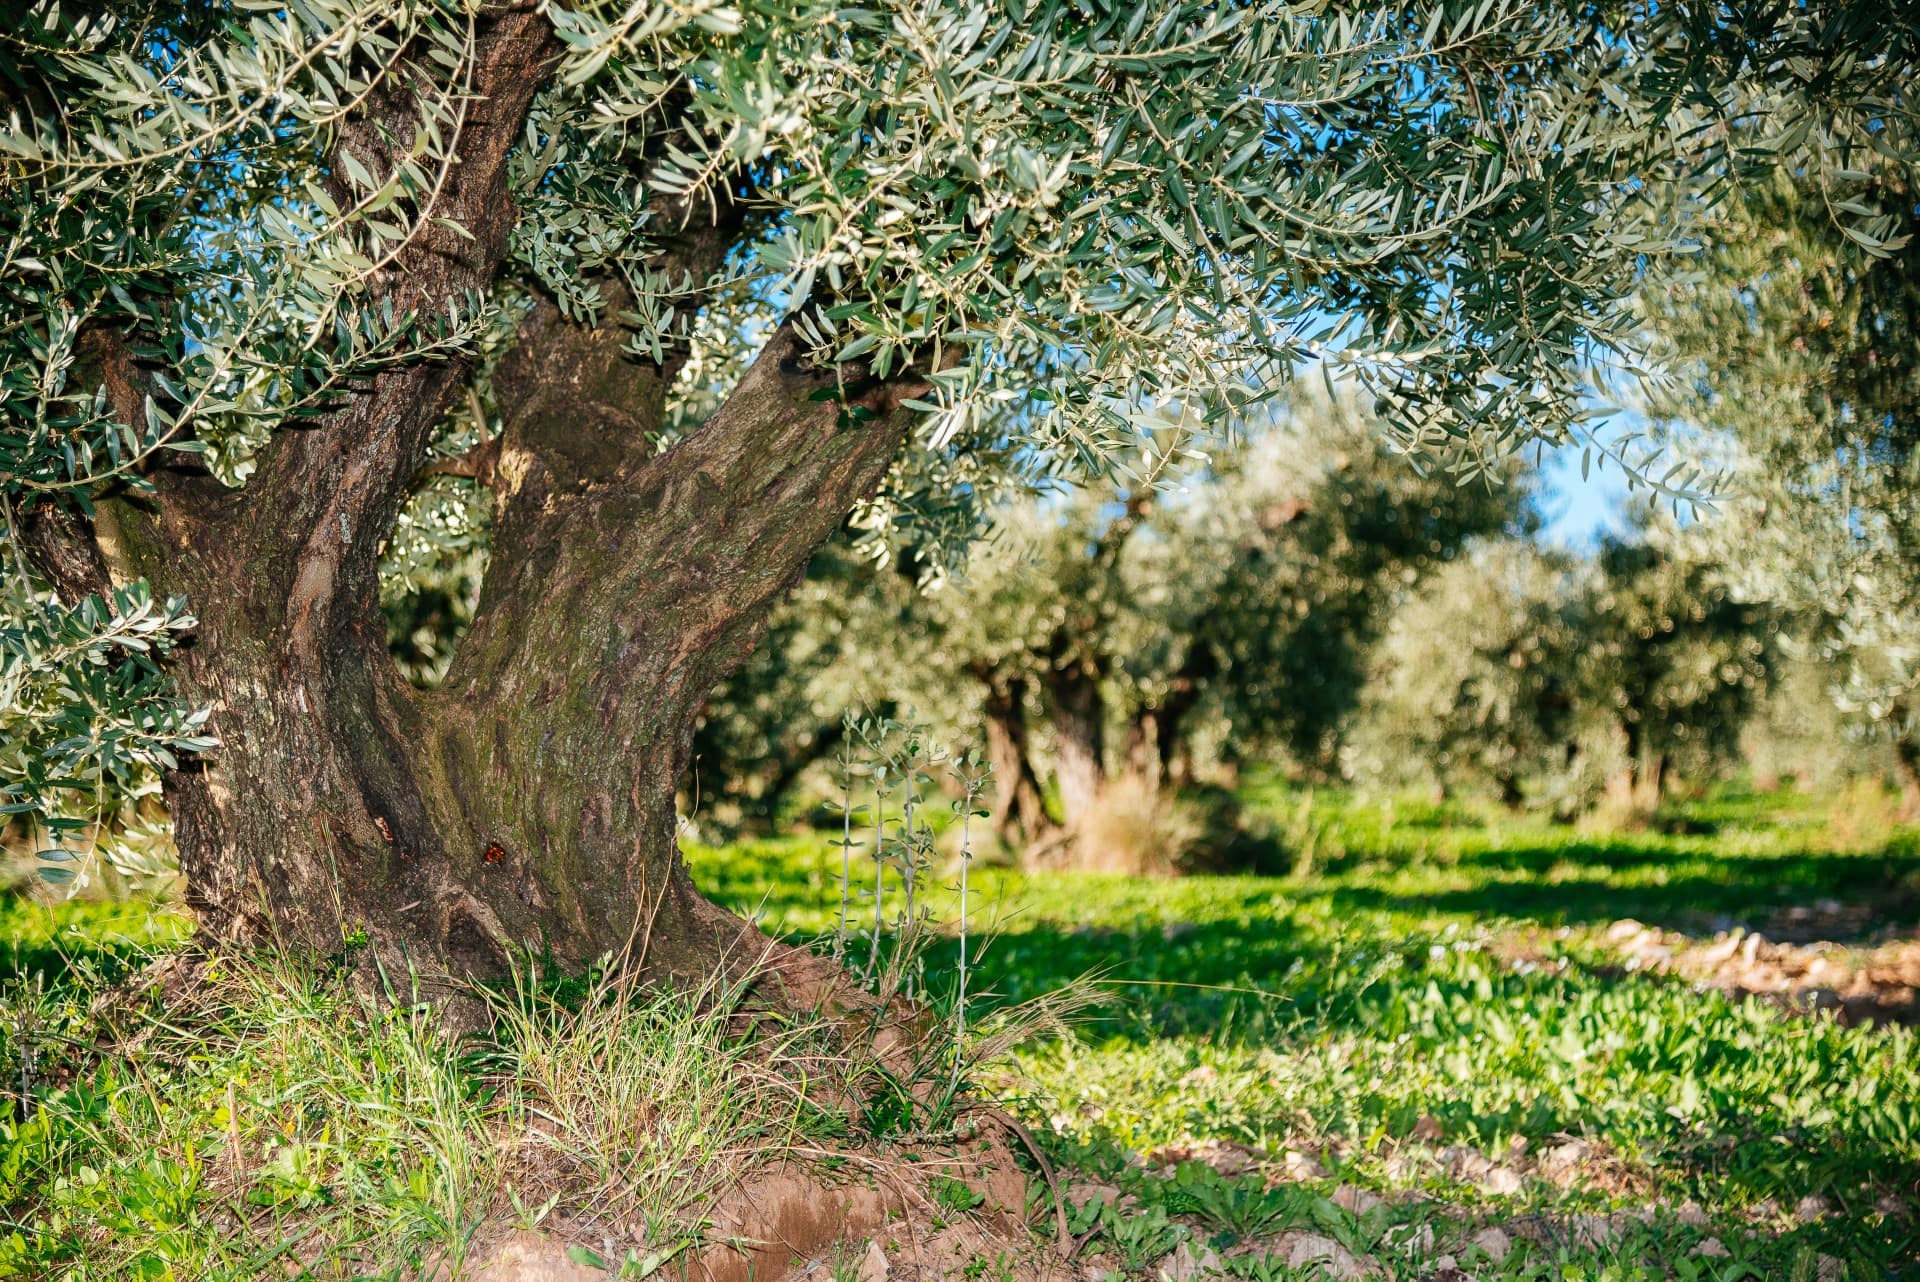 europa-profili-la-migliore-produzione-di-olio-di-oliva-una-tradizione-di-famiglia-mette-radici-a-moulin-de-la-coquille-l-epoca-dell-olio-d-oliva